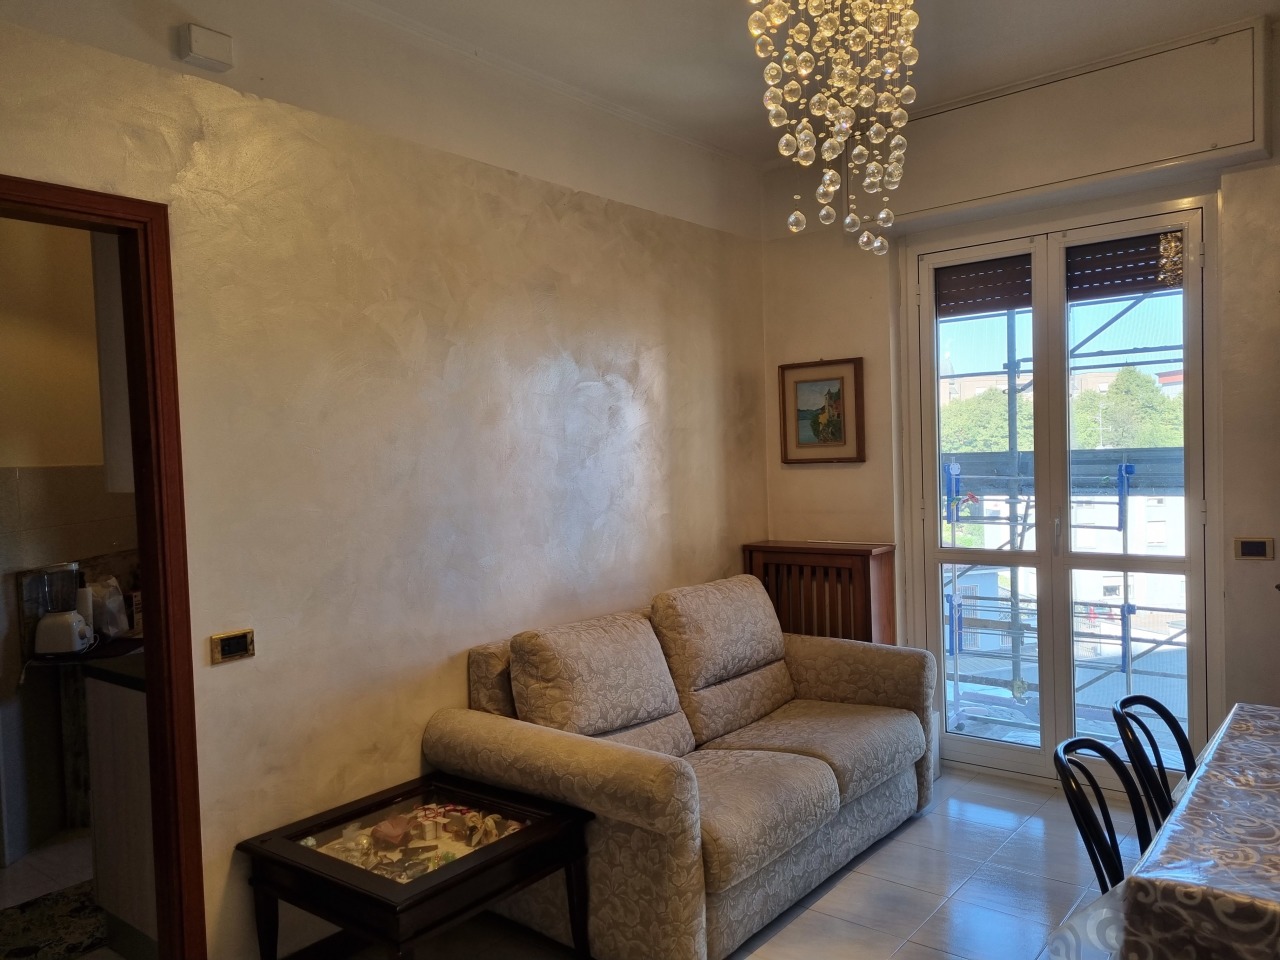 Appartamento in vendita a Cusano Milanino, 3 locali, prezzo € 142.000 | CambioCasa.it